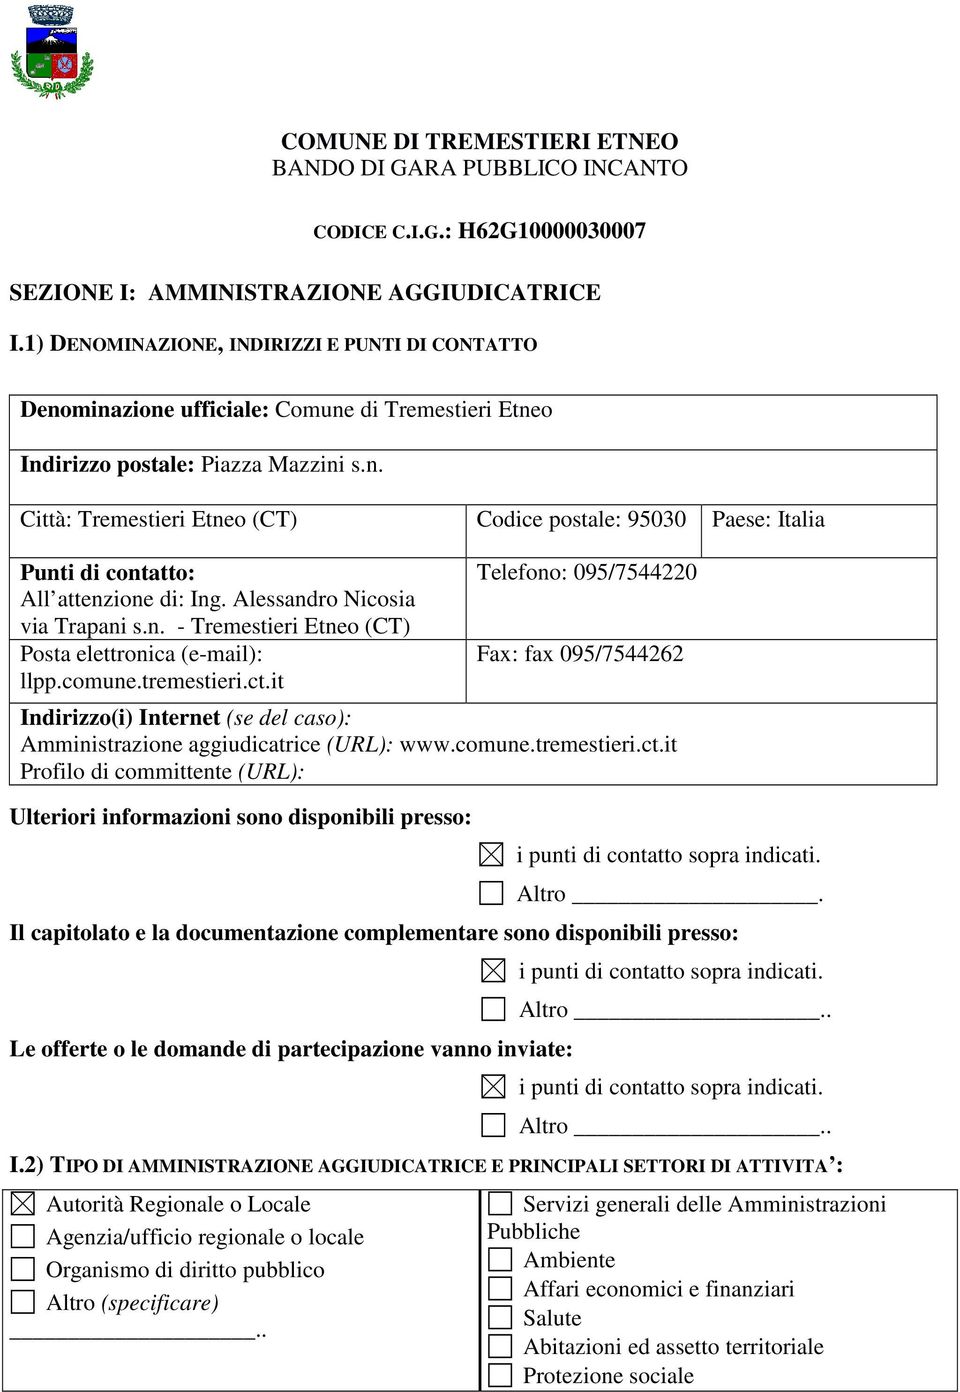 Alessandro Nicosia via Trapani s.n. - Tremestieri Etneo (CT) Posta elettronica (e-mail): llpp.comune.tremestieri.ct.